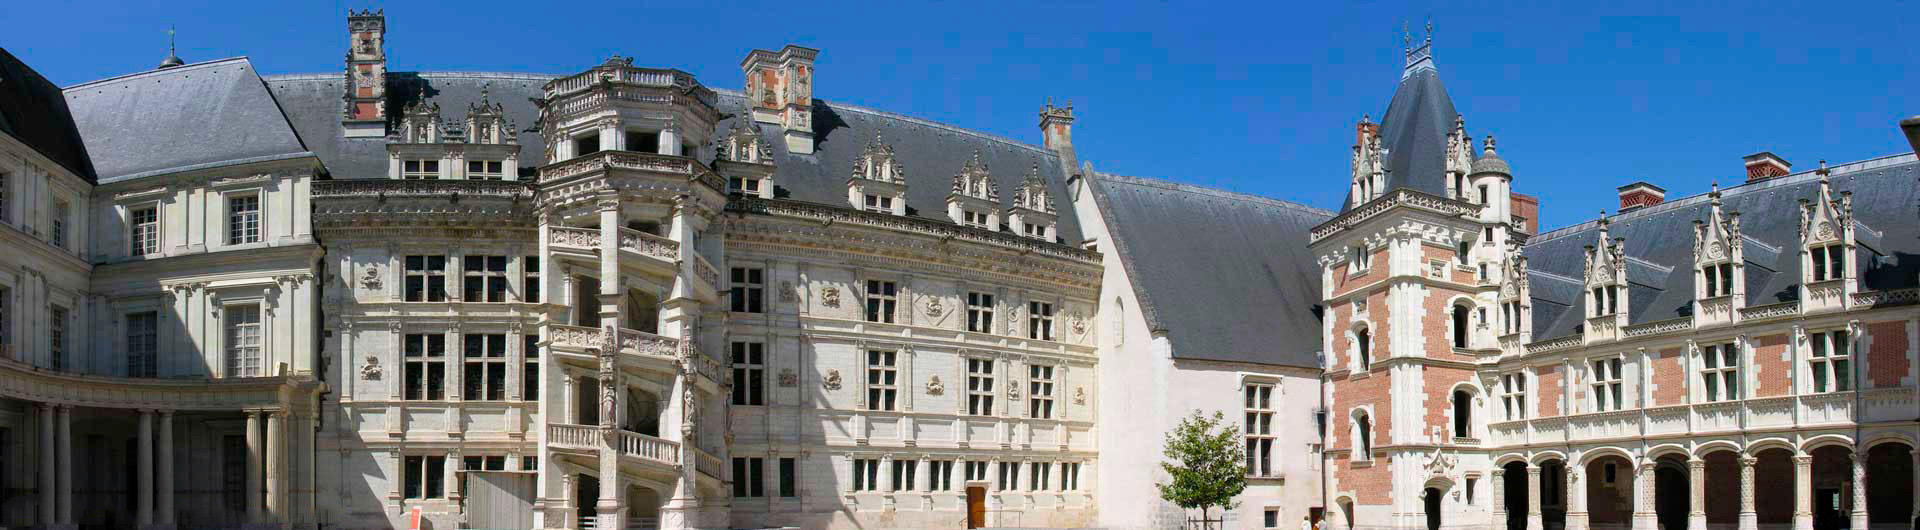 Guided tour of the Château de Blois